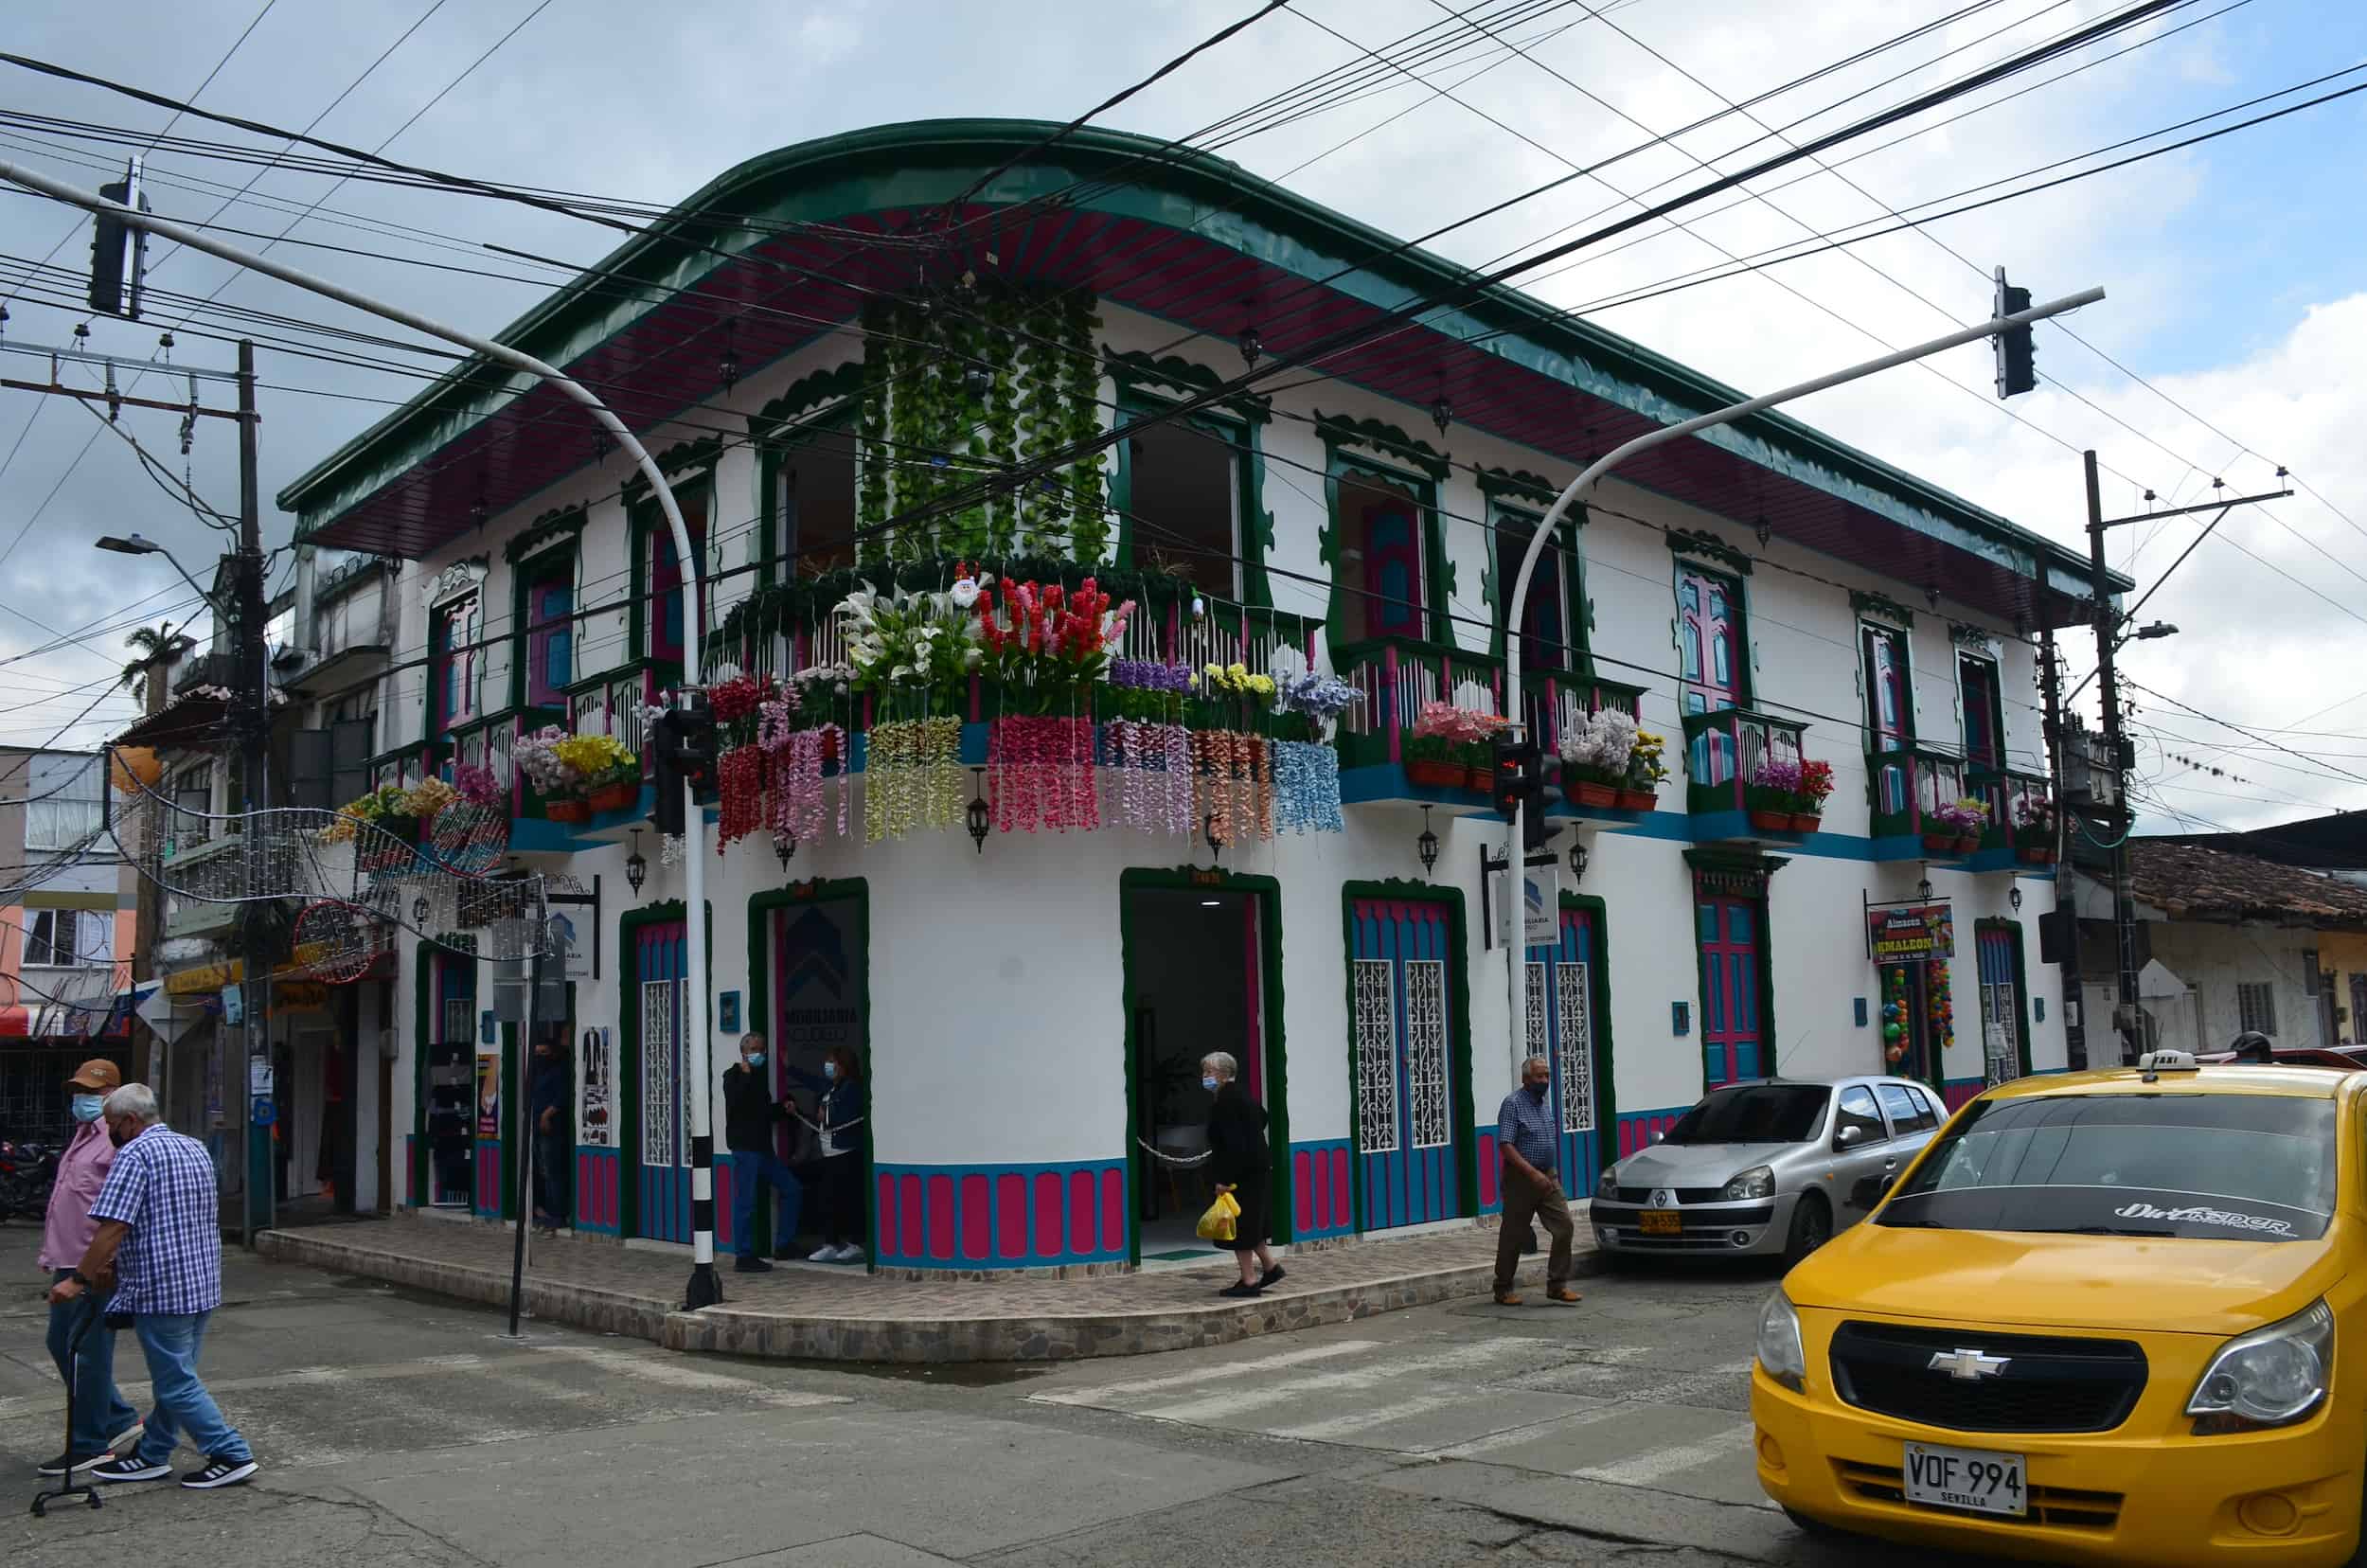 Building on Calle 50 in Sevilla, Valle del Cauca, Colombia